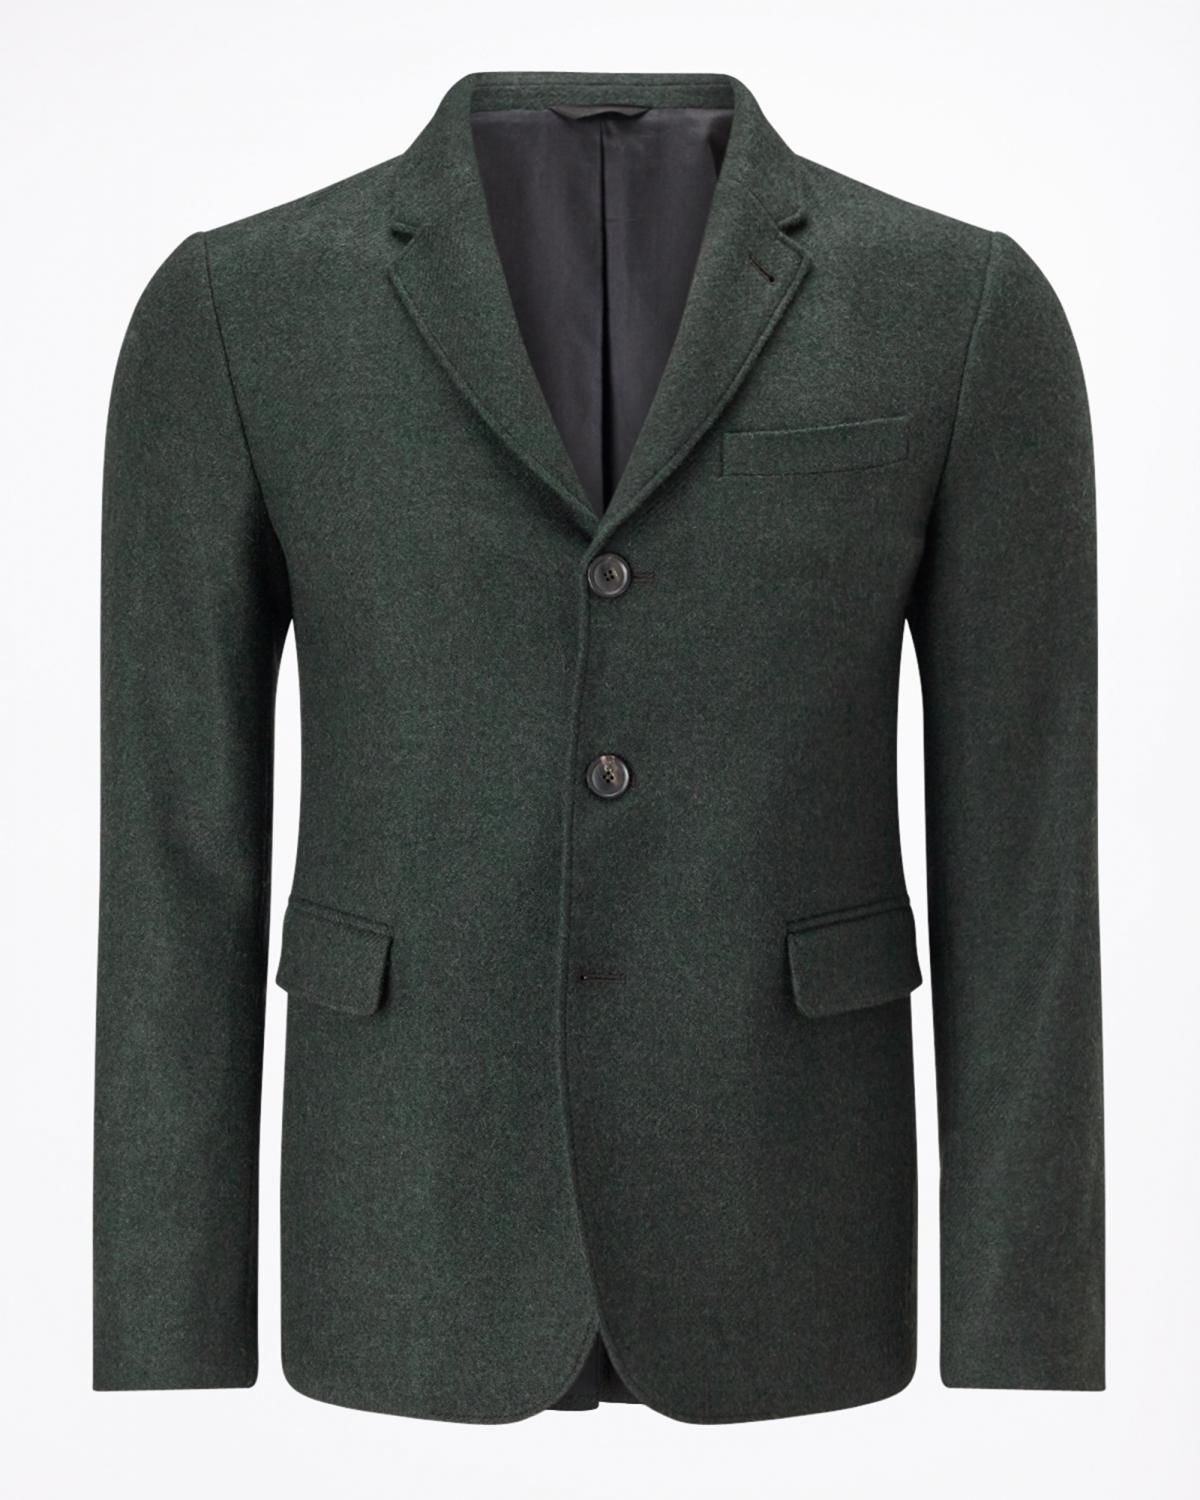 Jigsaw, Cotton Linen Garment Dye Jacket, £245